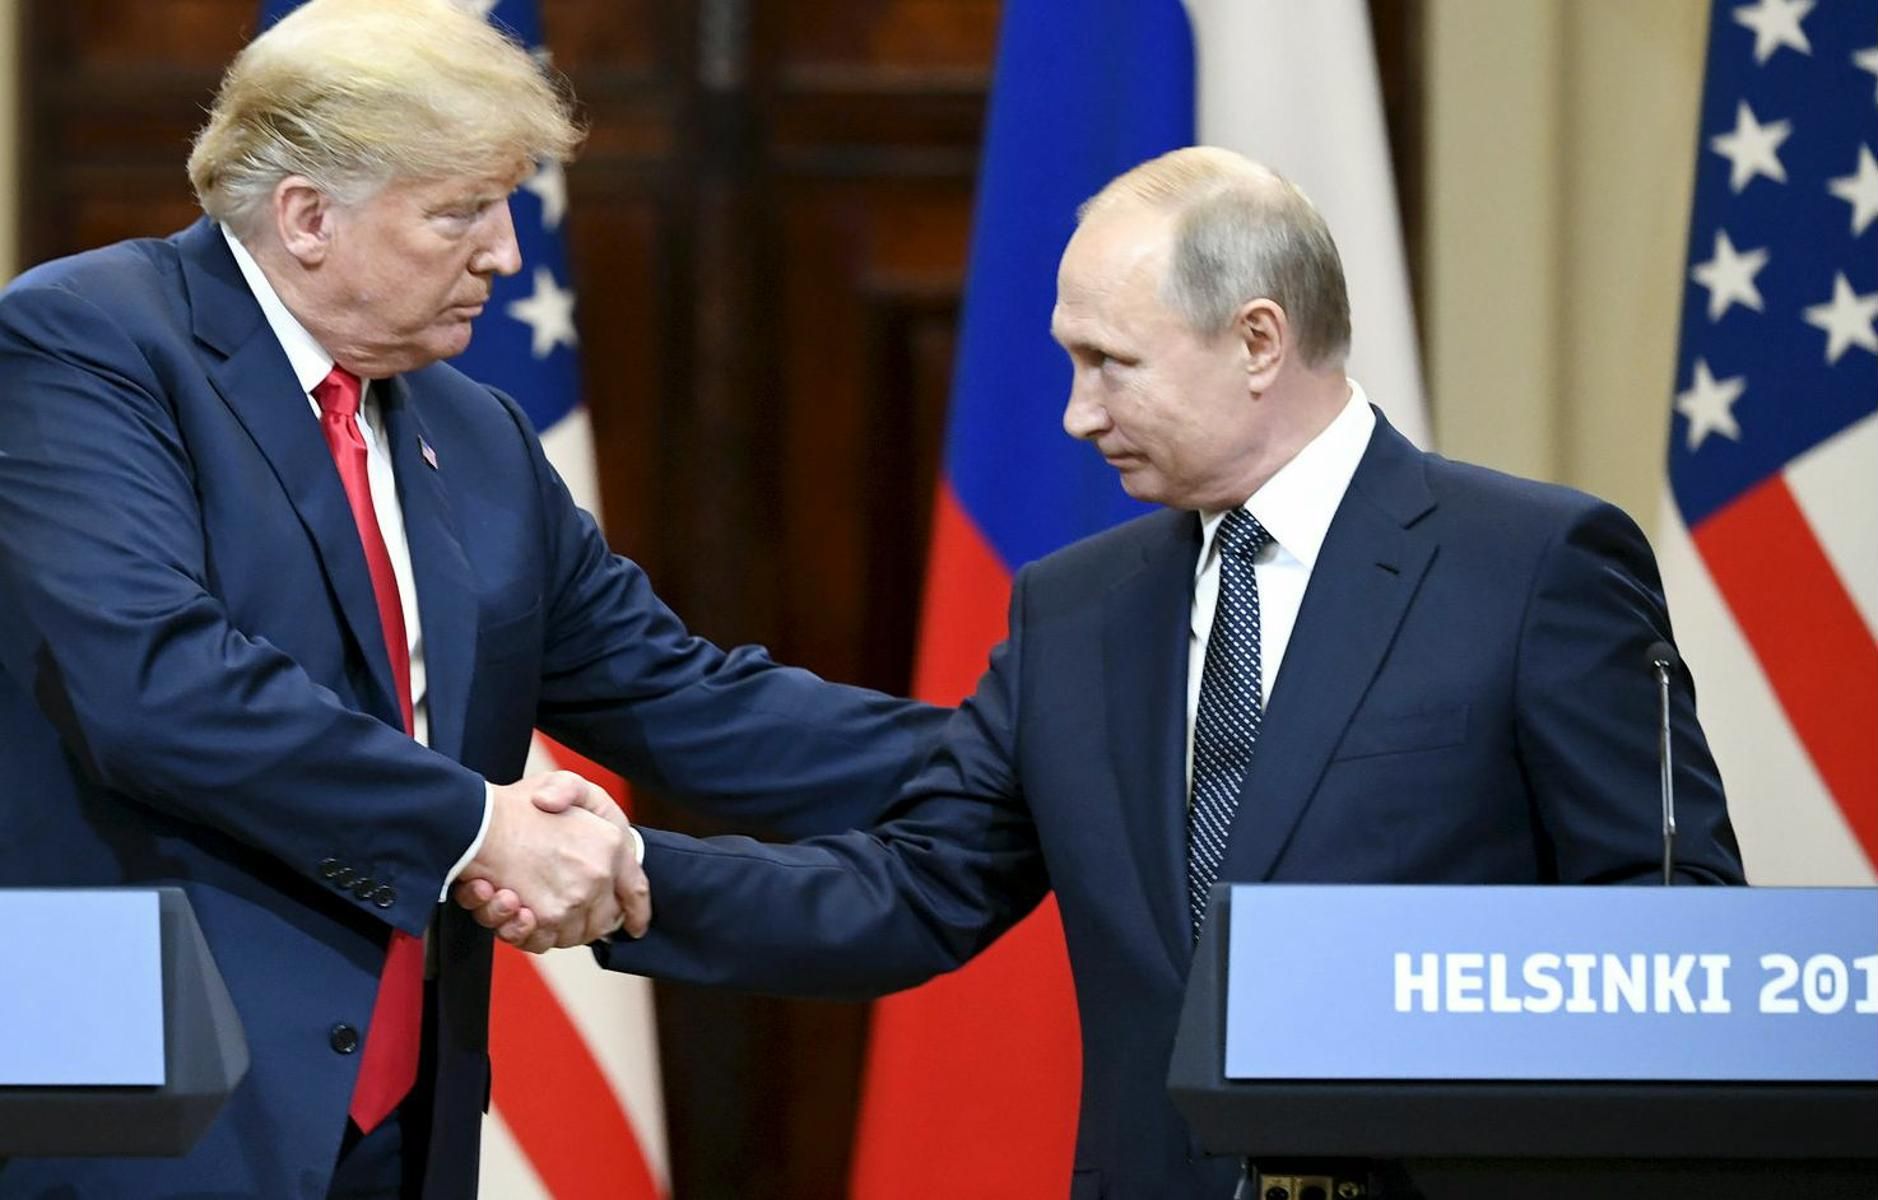 Критики към президента Тръмп след срещата в Хелзинки с Путин